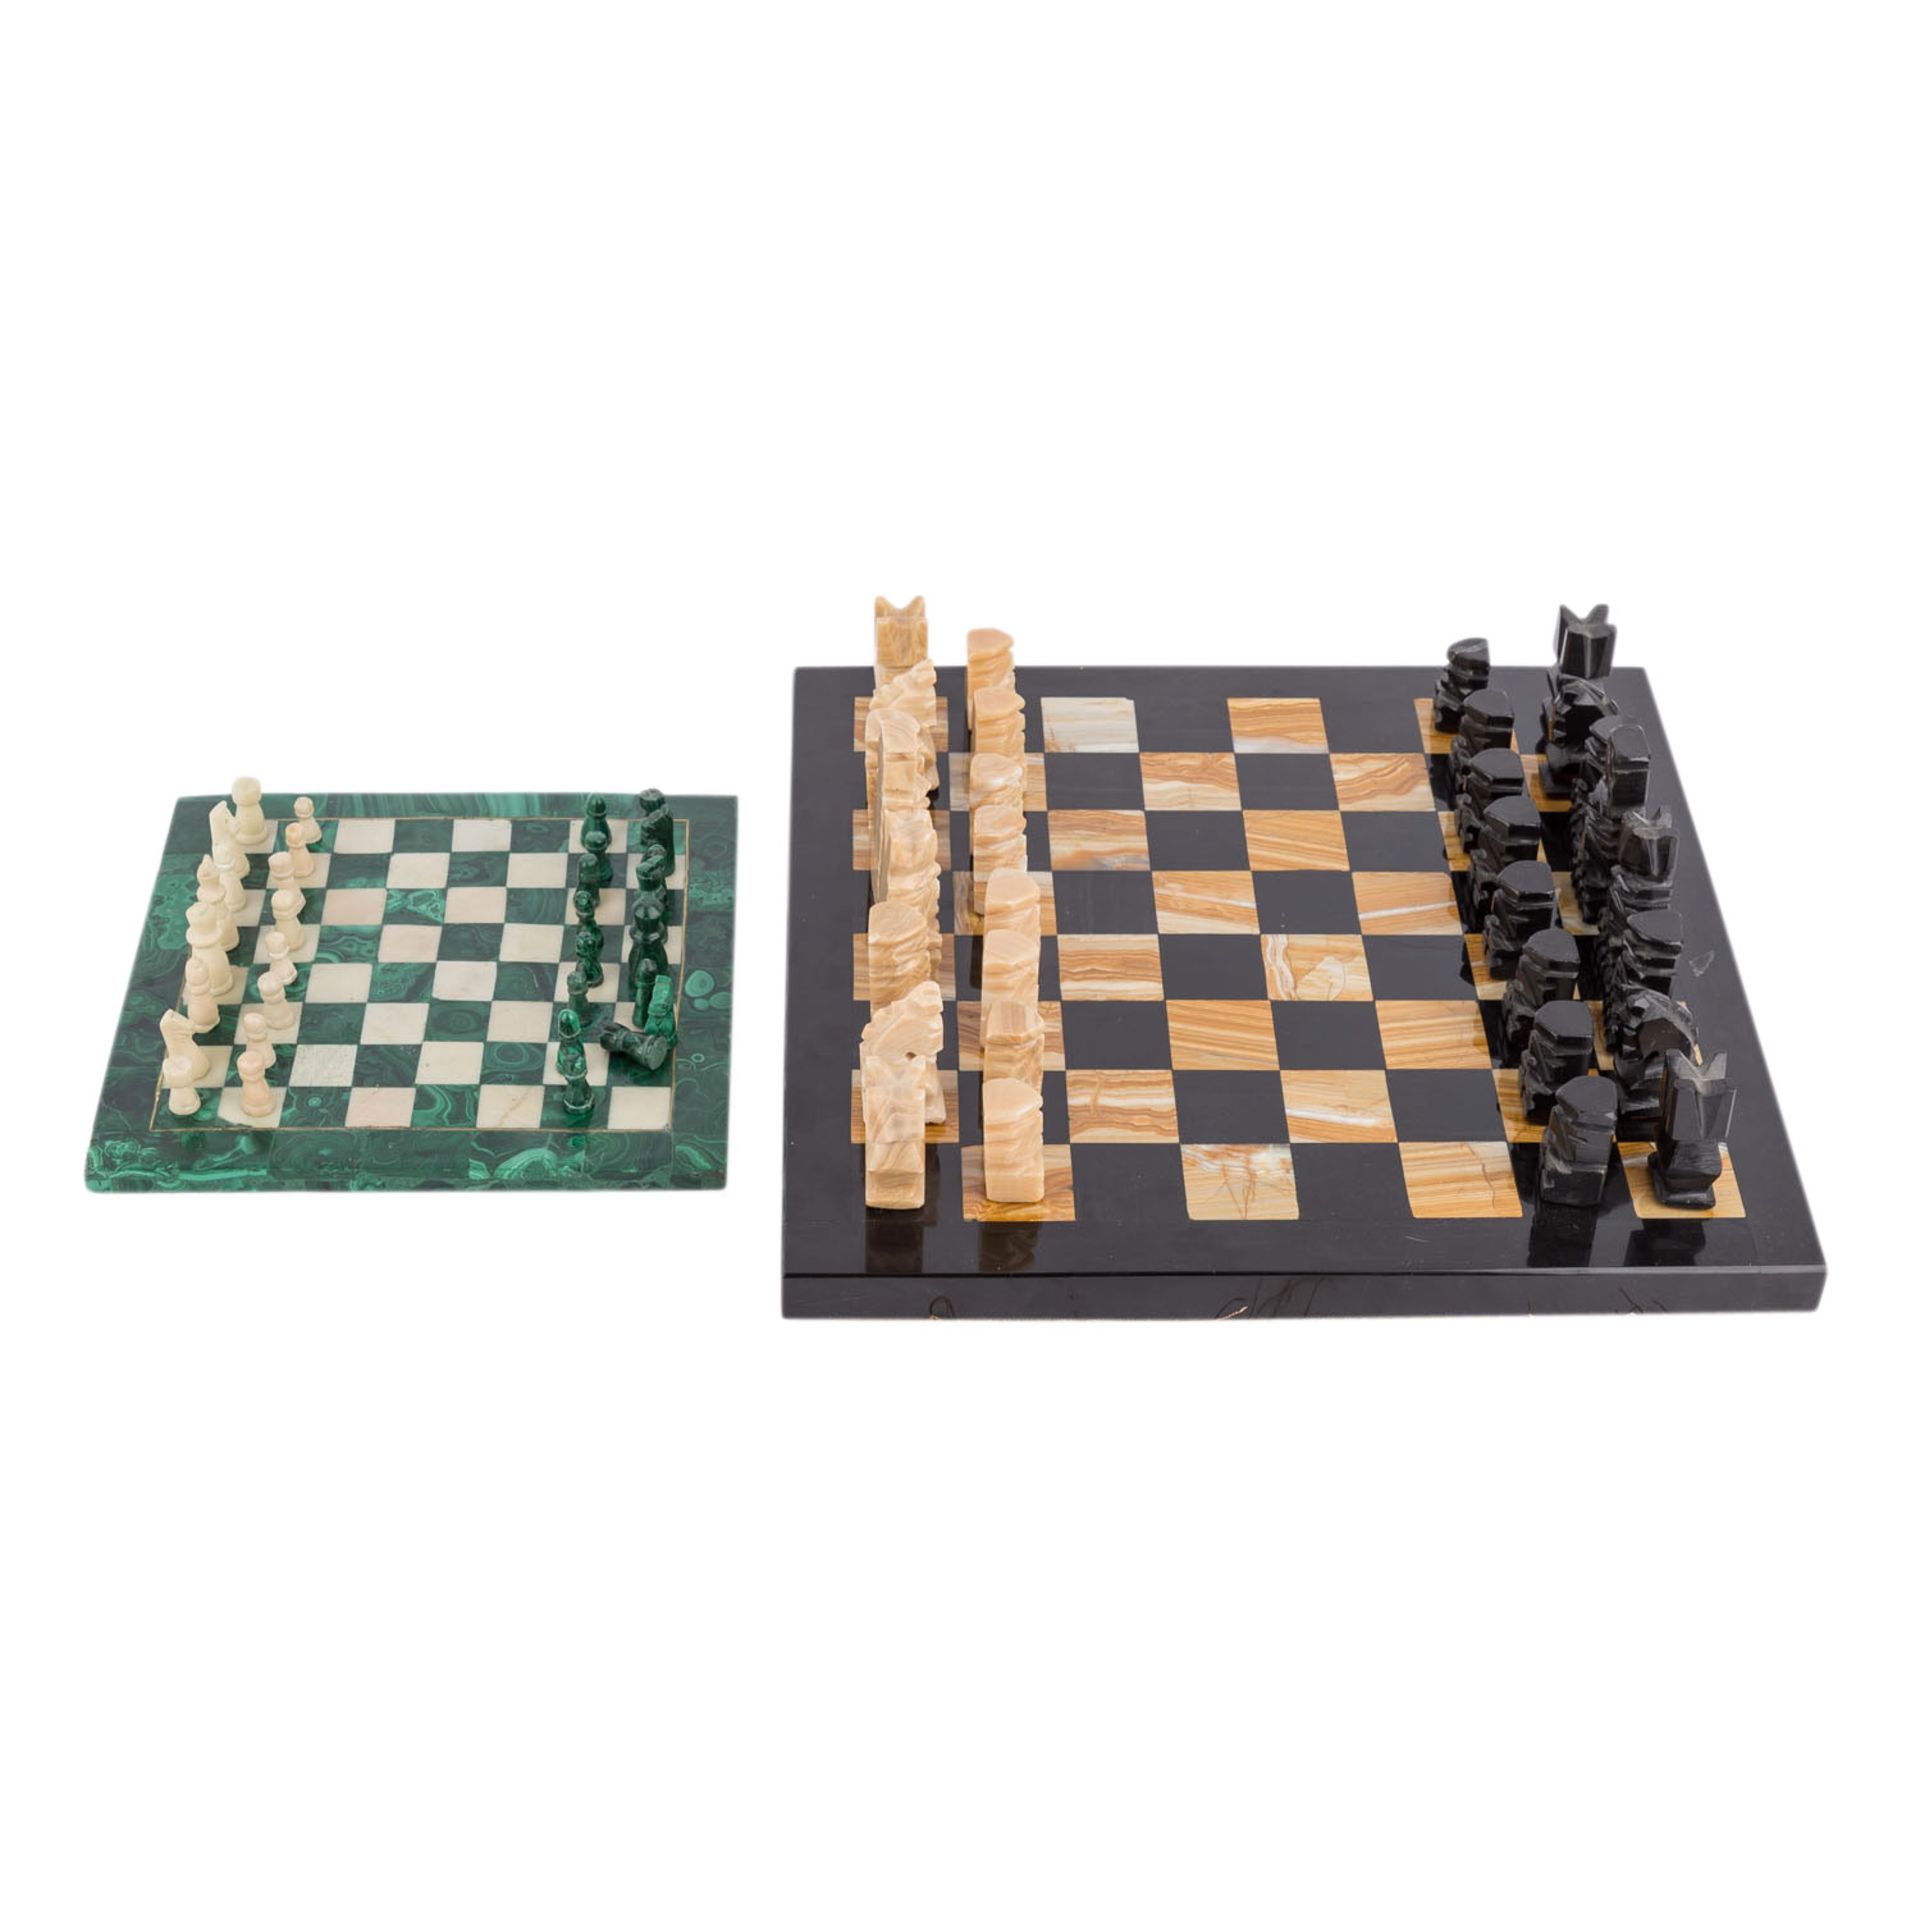 ZWEI STEINSCHACHSPIELESchweres Schachbrett aus Jaspis und Onyx, kleines Brett mit Malachitauflage, - Bild 2 aus 7